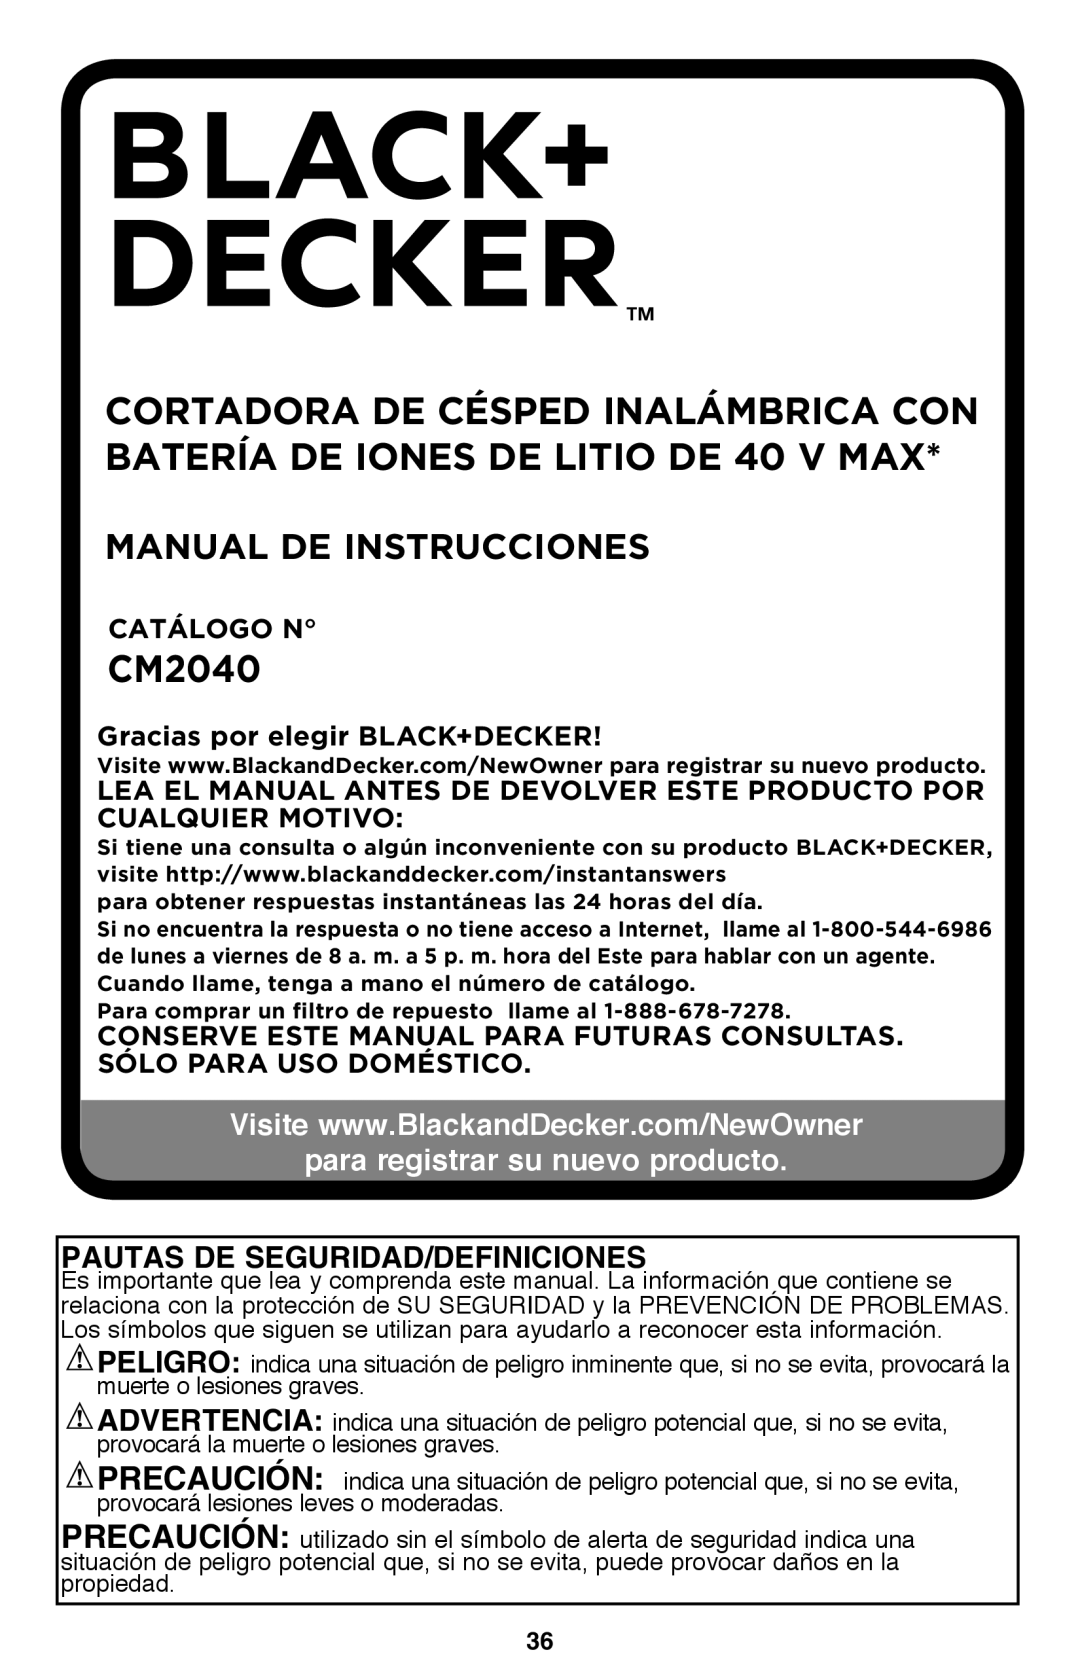 Black & Decker CM2040 Manual De Instrucciones, para registrar su nuevo producto, Pautas De Seguridad/Definiciones 